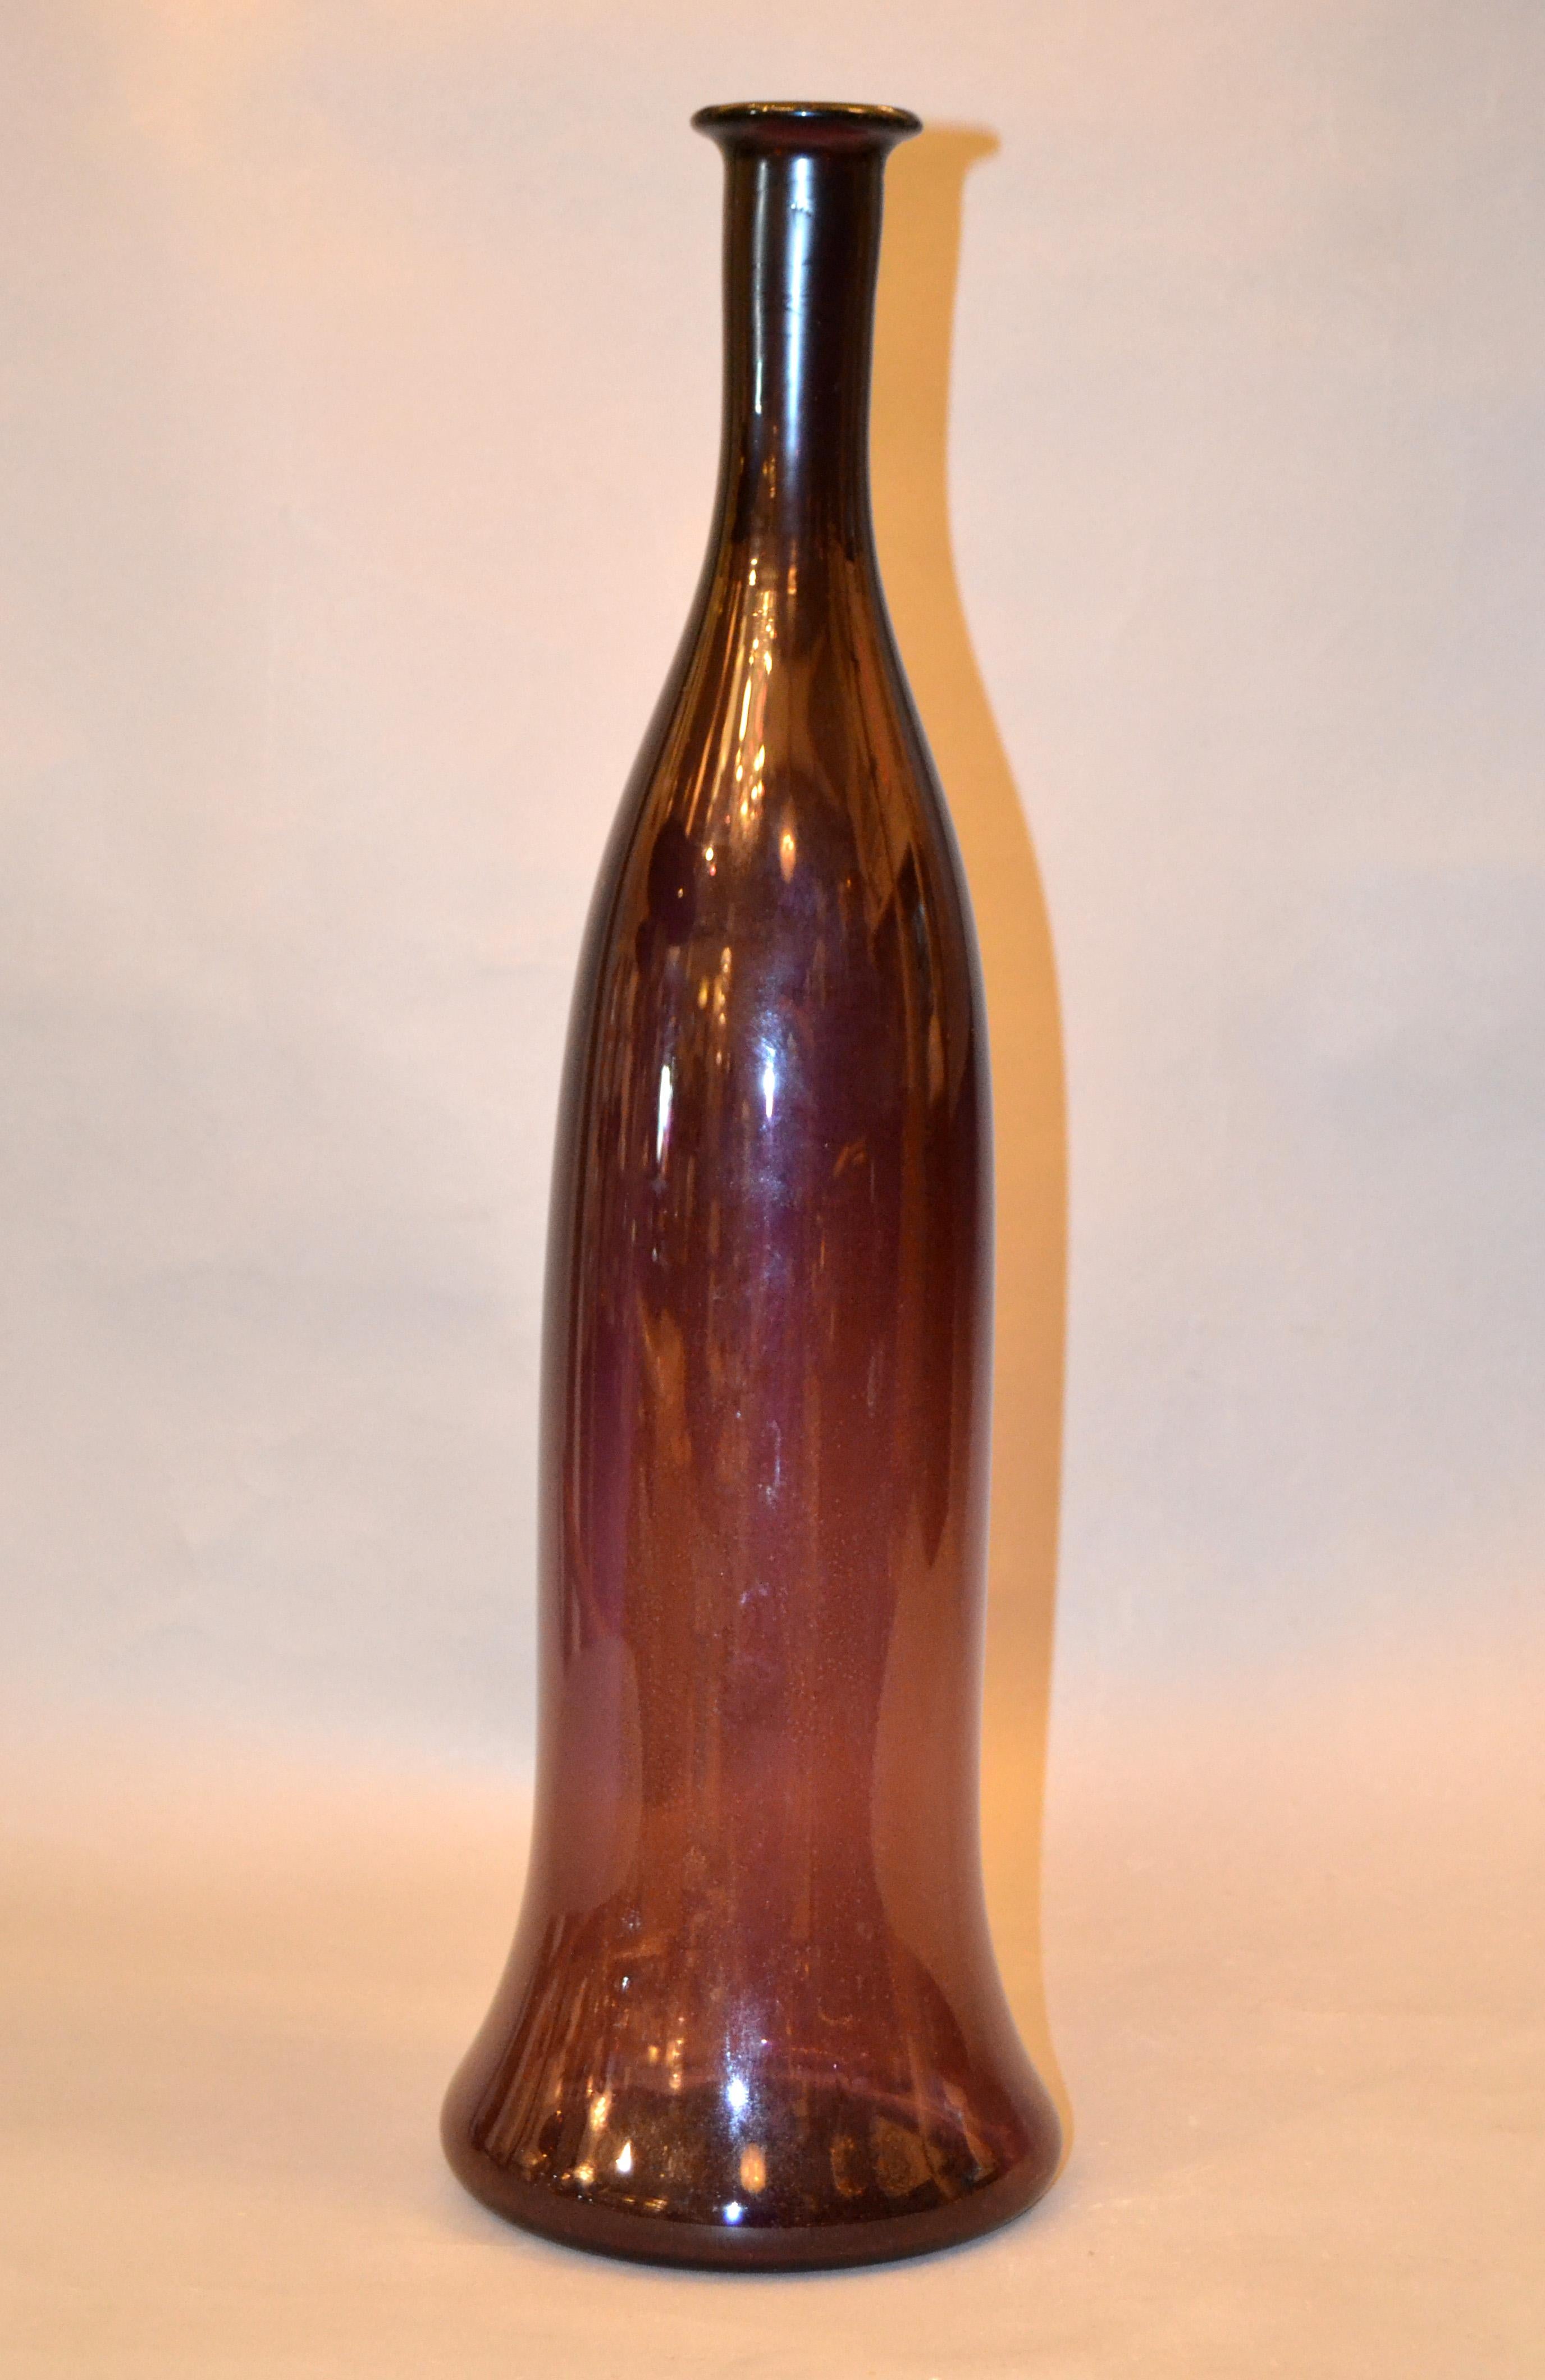 Vase, récipient, carafe en verre soufflé de style moderne du milieu du siècle en violet améthyste translucide.
Le violet améthyste est une teinte qui captive l'imagination et inspire.
Ce vase est parfait pour votre maison ou vos réunions de